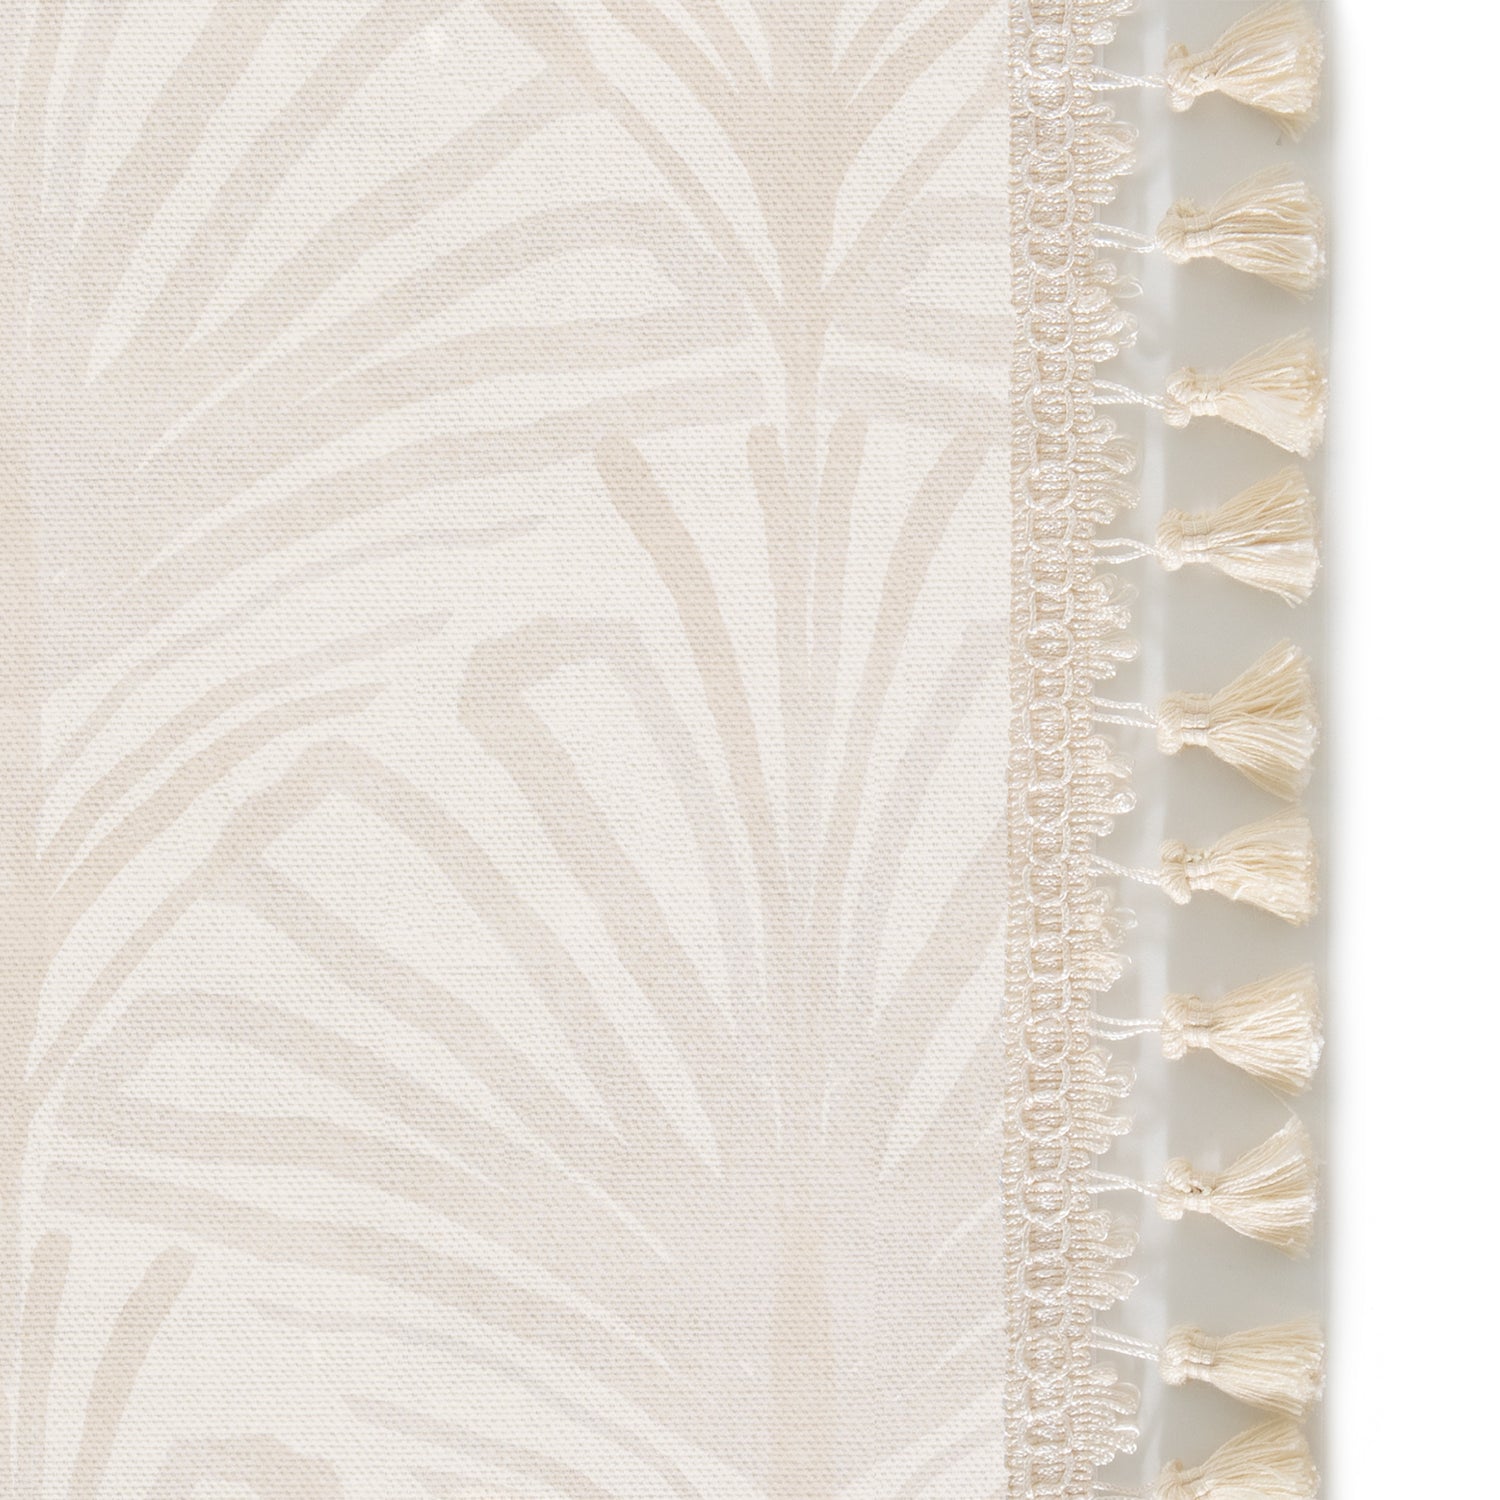 Upclose picture of Suzy Sand custom curtain with cream tassel trim